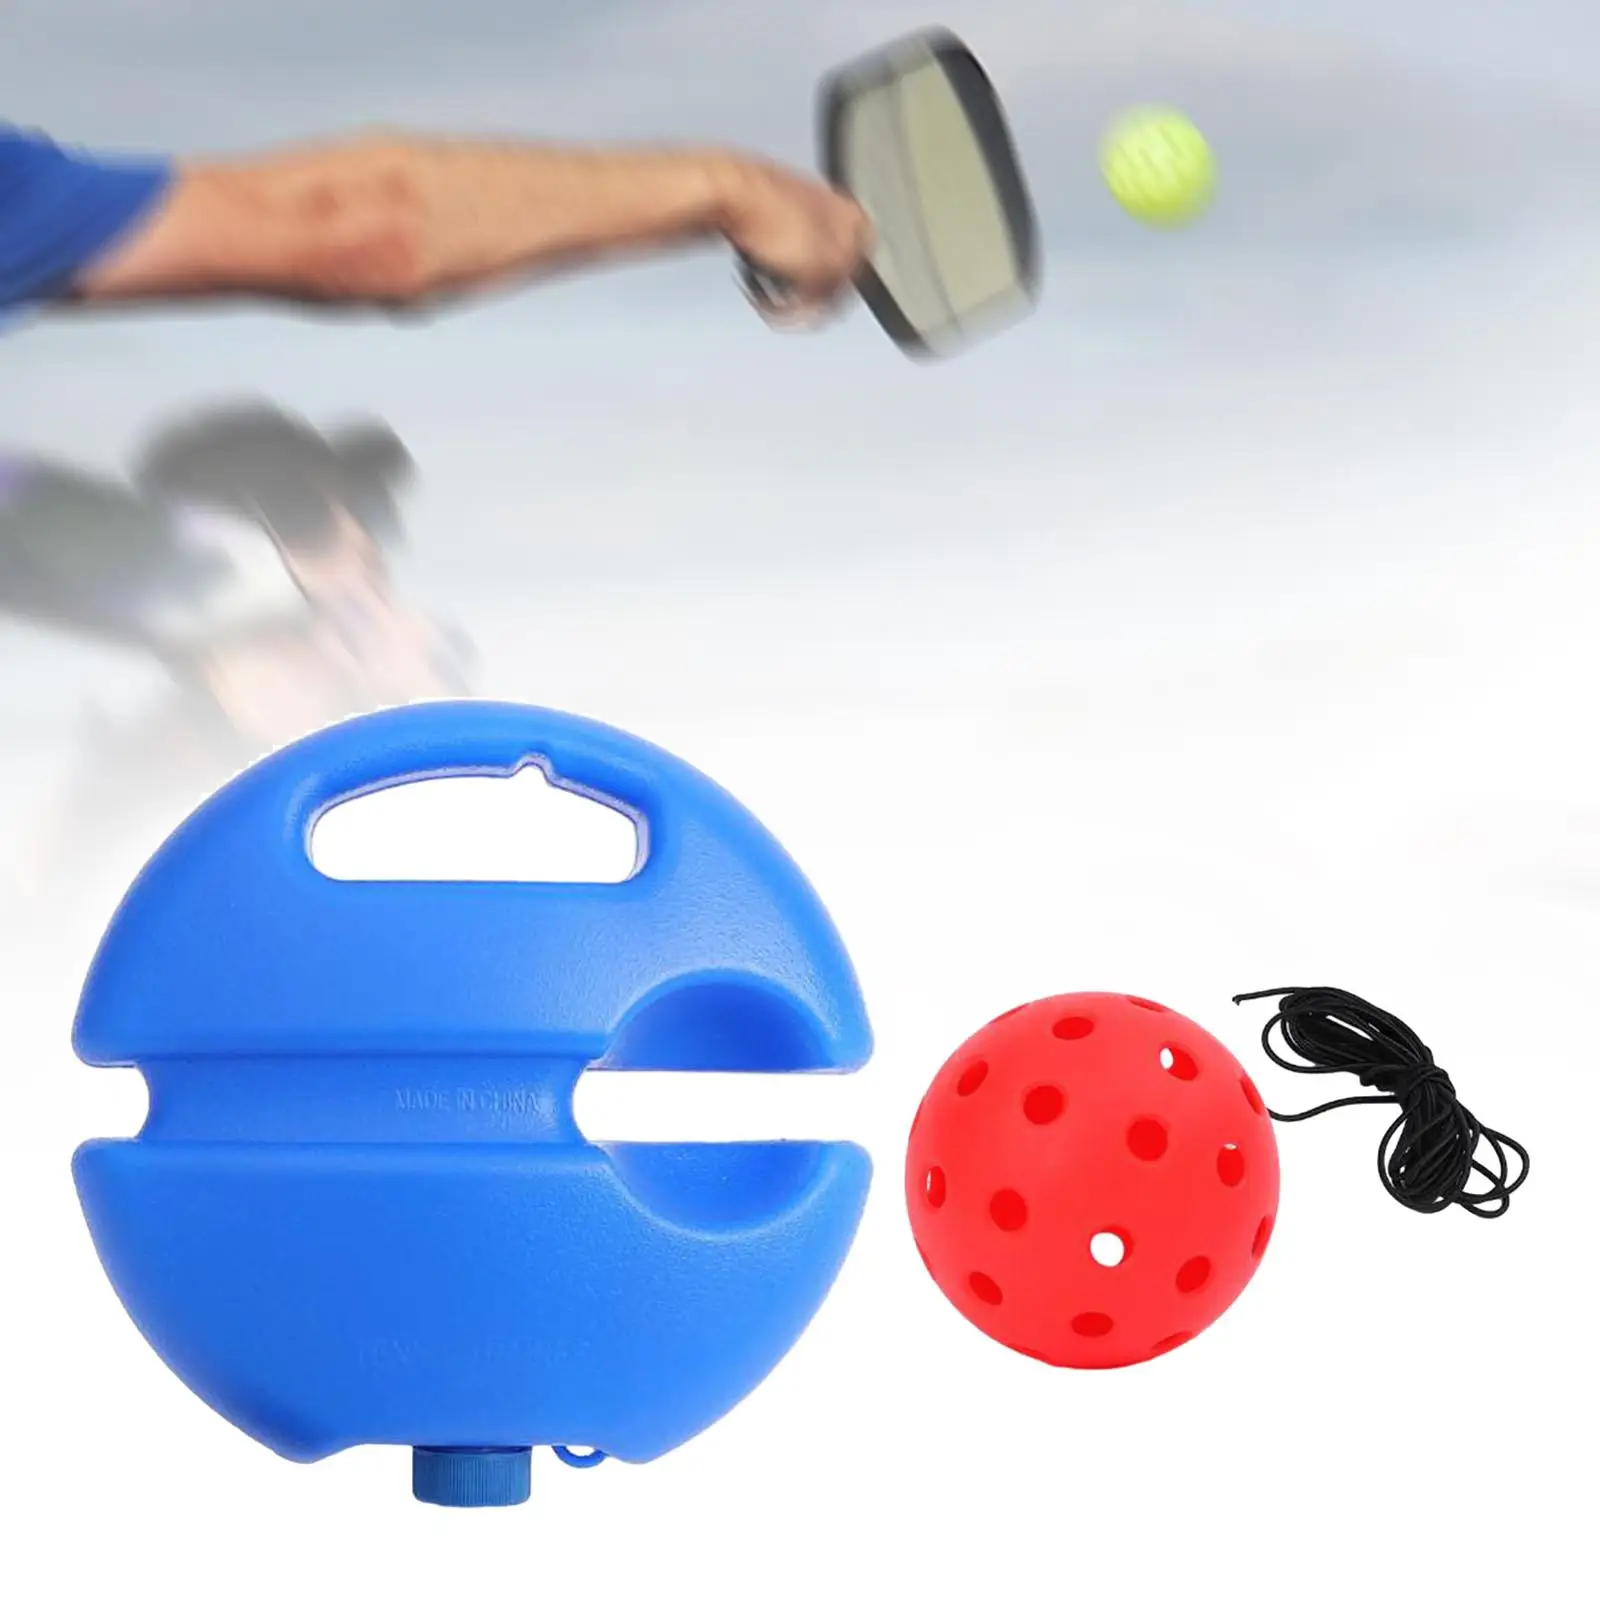 เครื่องยิงพิเคิลบอลสำหรับฝึกการตีพิเคิลบอลแบบพกพาอุปกรณ์ช่วยฝึกเทนนิสสำหรับมือใหม่กีฬากลางแจ้ง